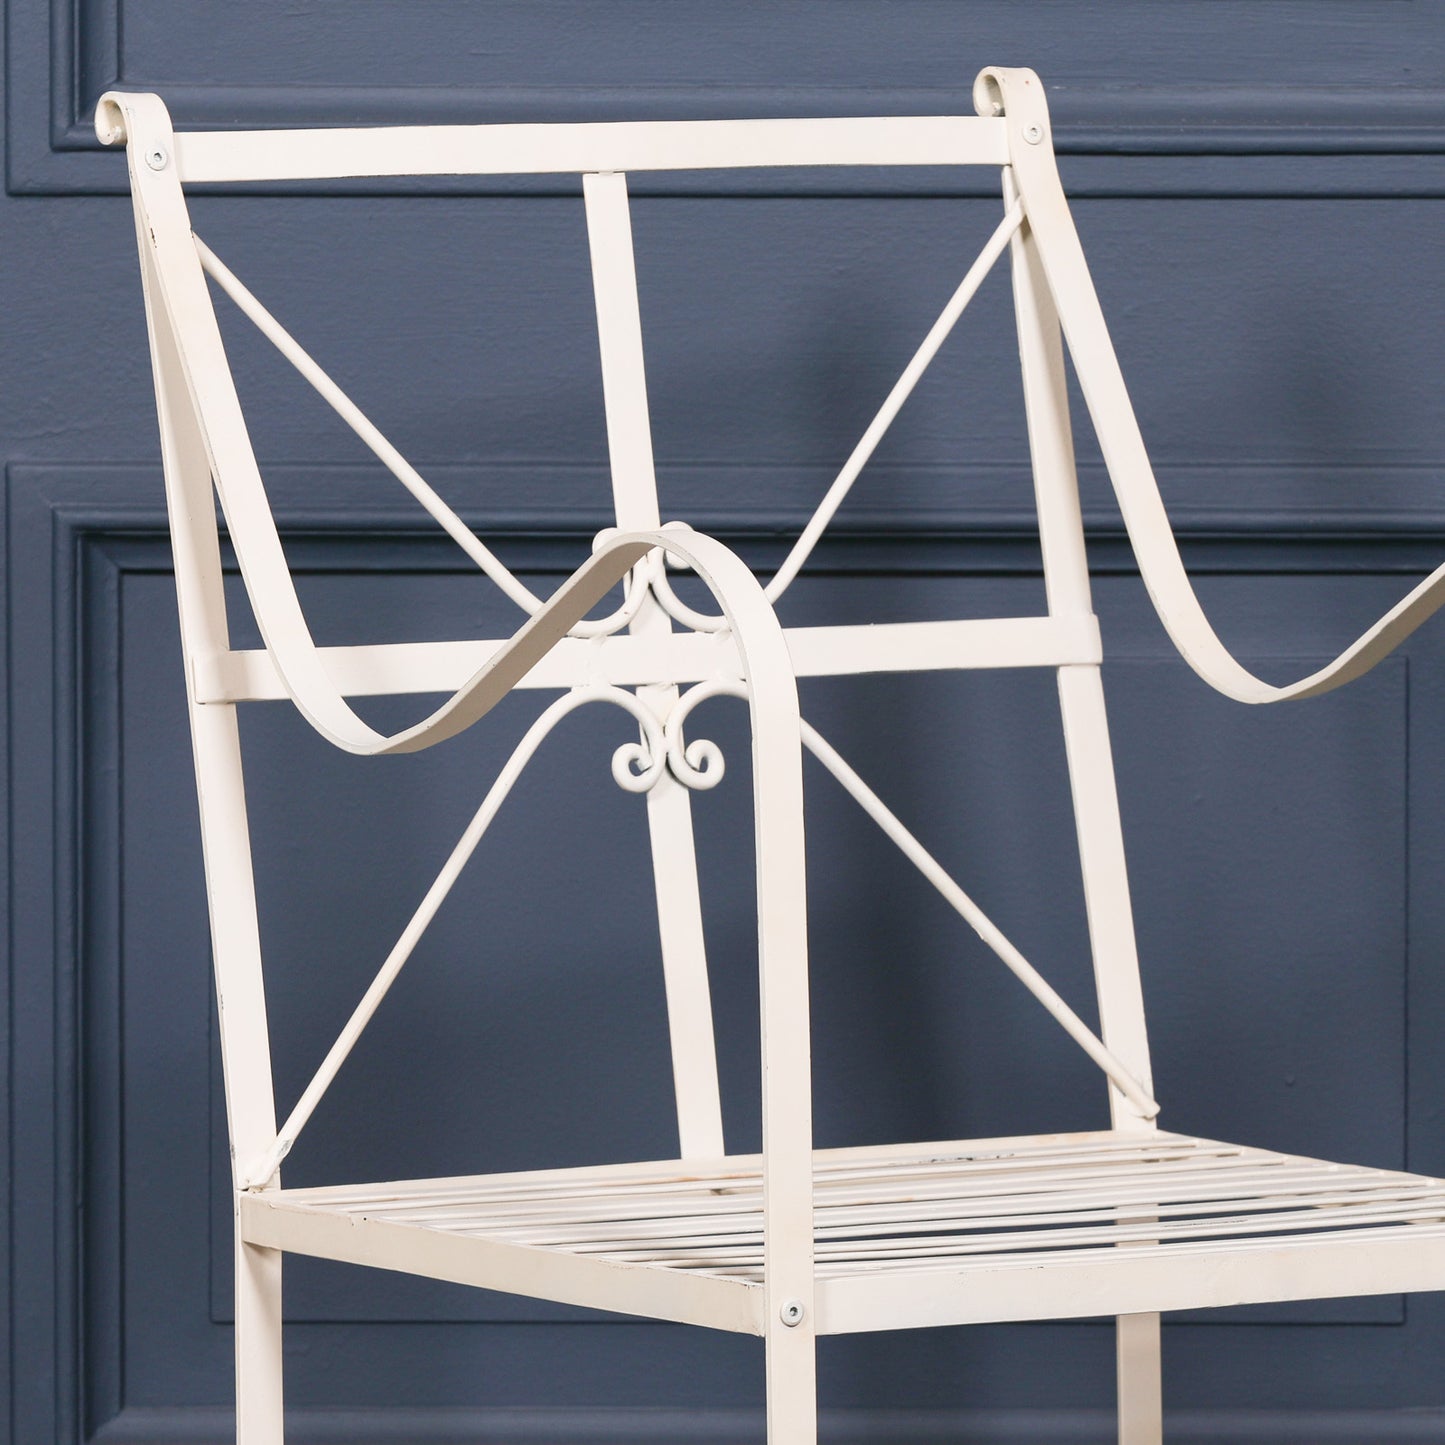 Iron Frame Off White / Cream Distressed Garden Dining Chair CasaFenix